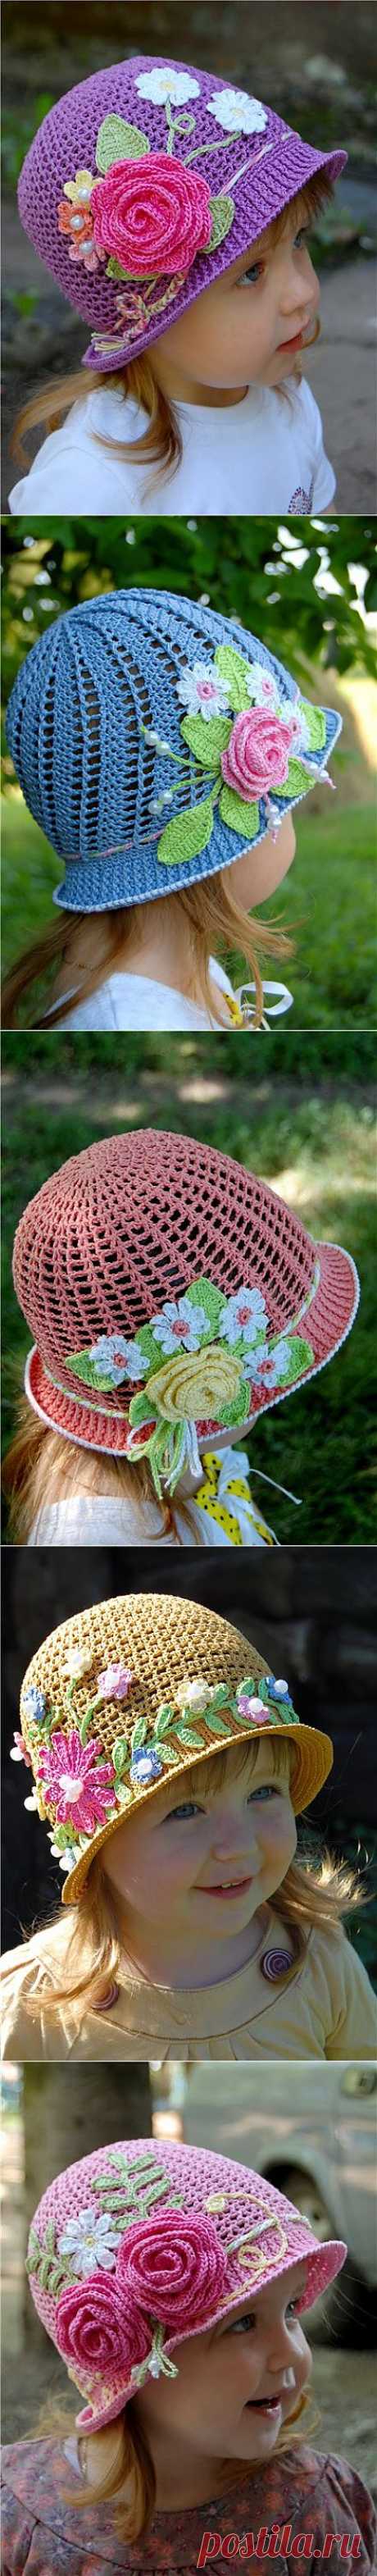 Вяжем чудесные летние шляпки-панамки для девочек.